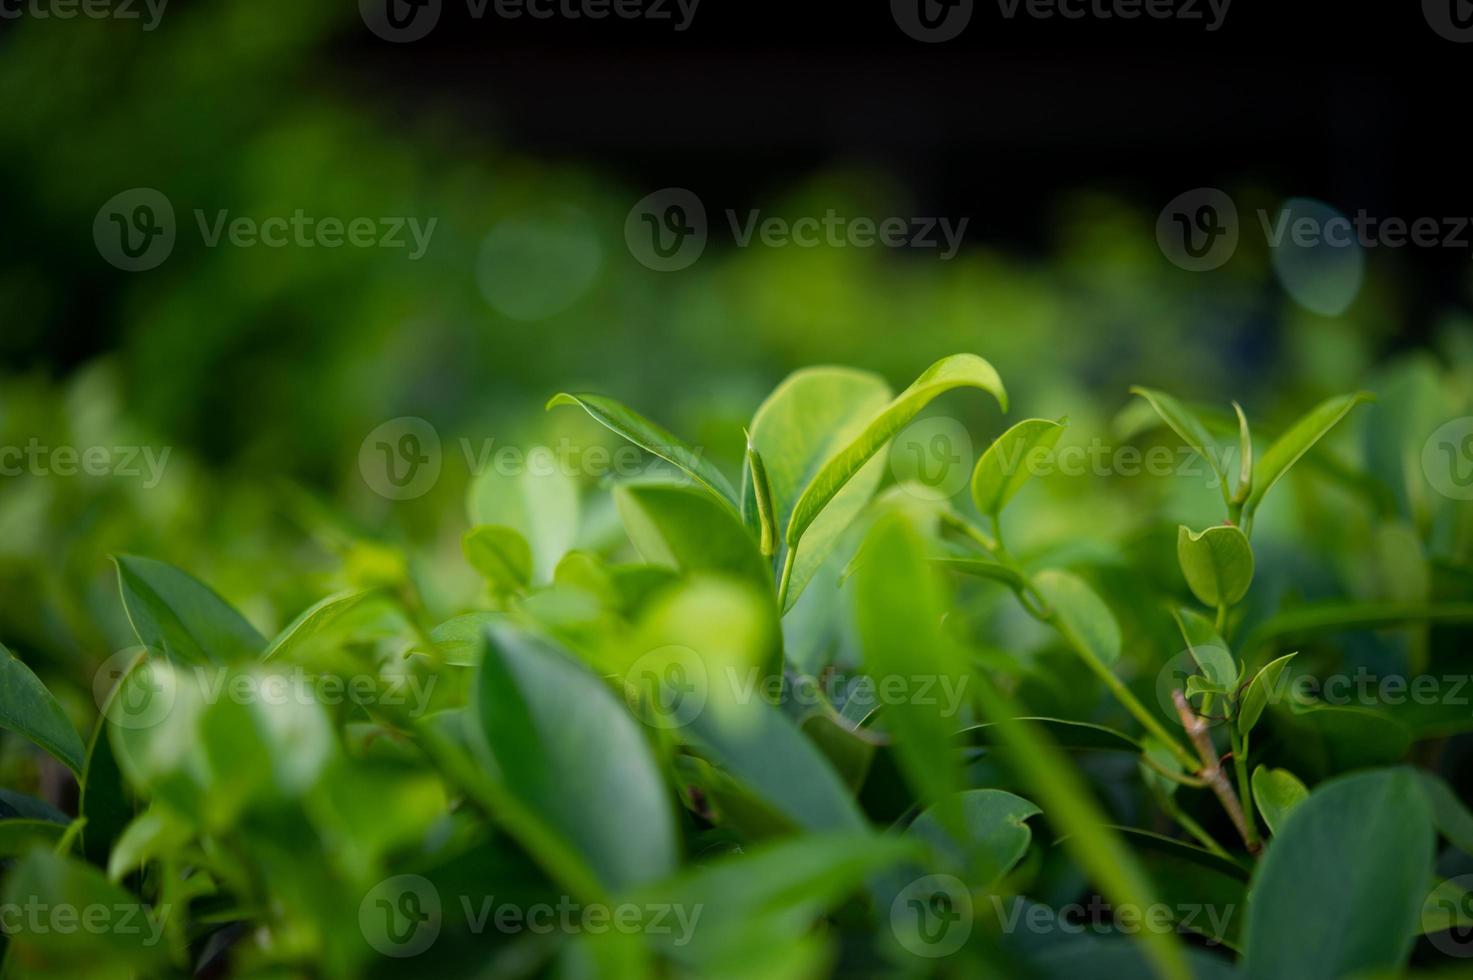 les sommets des feuilles de thé vert sont riches et attrayants. photo